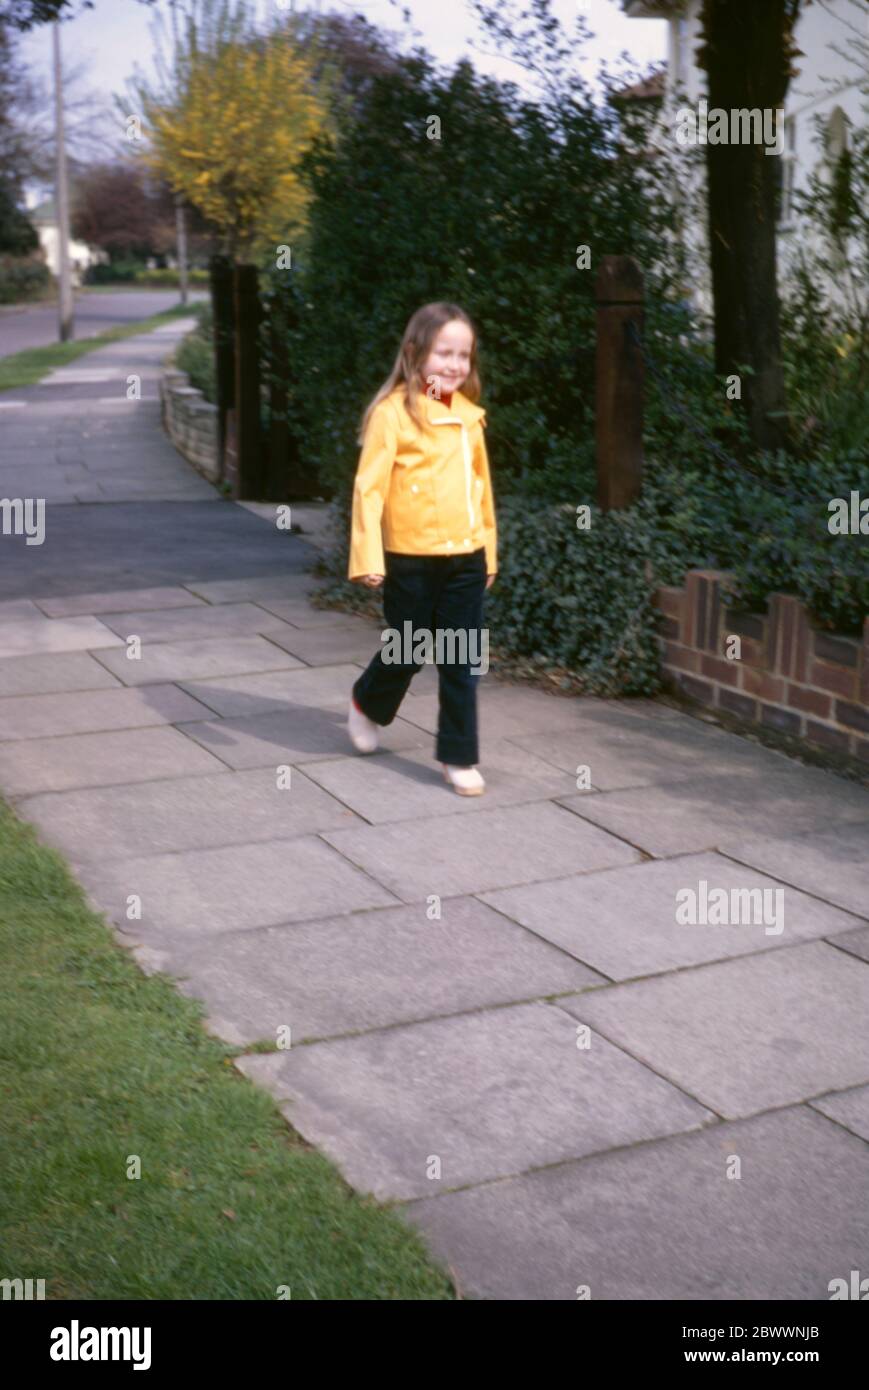 Ein junges, 7-jähriges Mädchen mit langen, schönen Haaren, das eine gelbe Jacke, cremefarbene Clogs und dunkelblaue Schnüre trägt, geht vor ihrem Familienhaus in den Londoner Vororten Hatch End, Middlesex, Großbritannien, auf dem Bürgersteig entlang Stockfoto